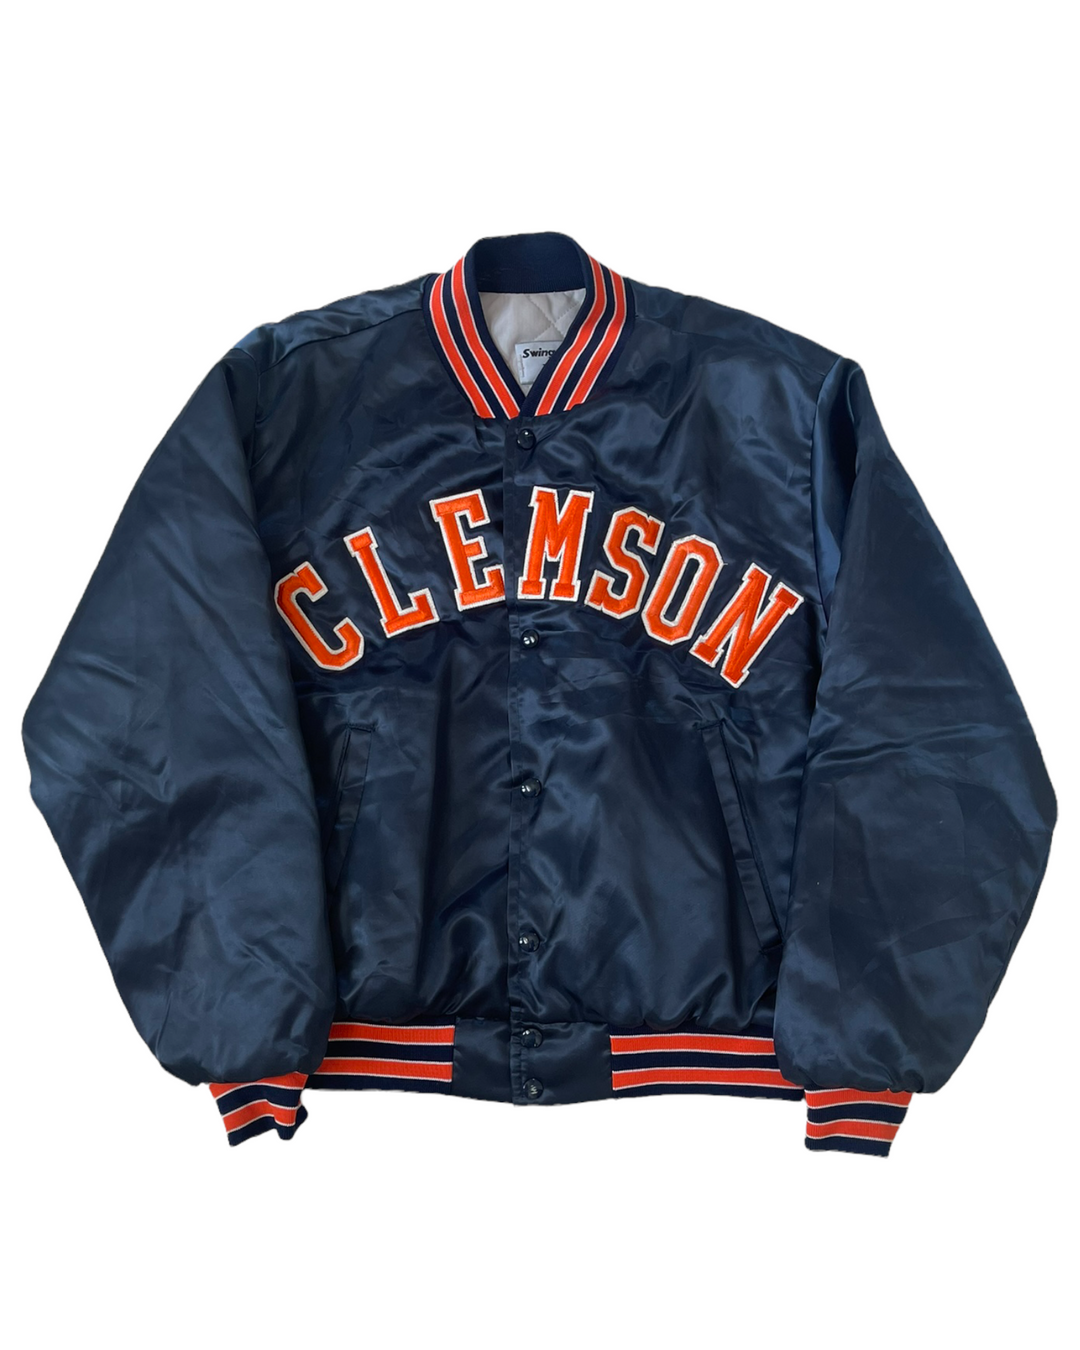 Clemson Vintage Bomber Jacket